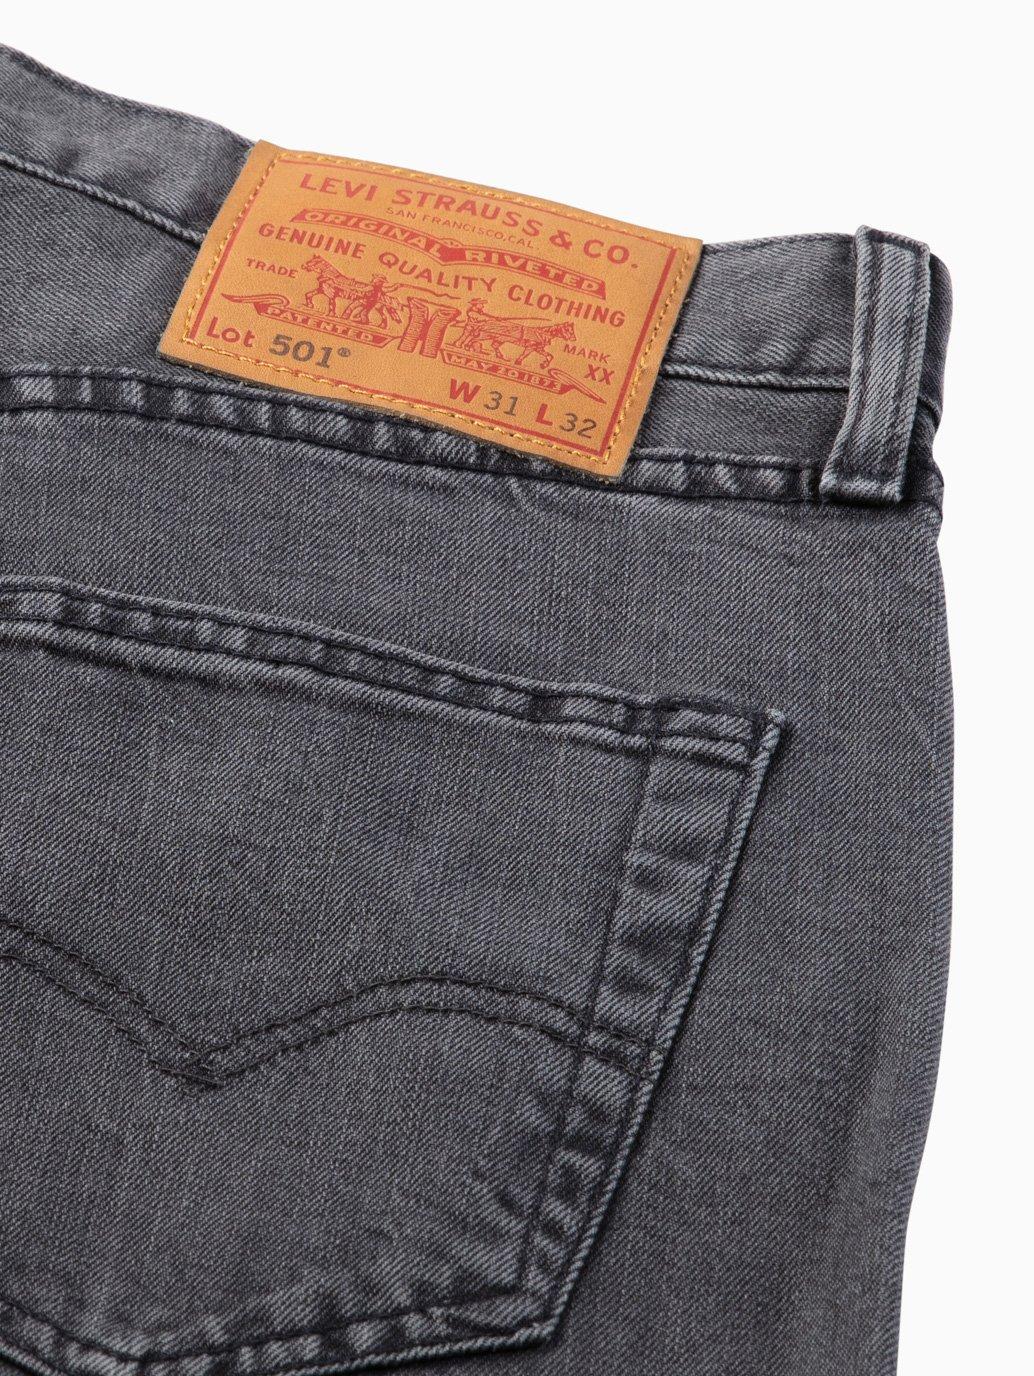 levis malaysia 501 Original Fit Jeans 005013059 15 Details